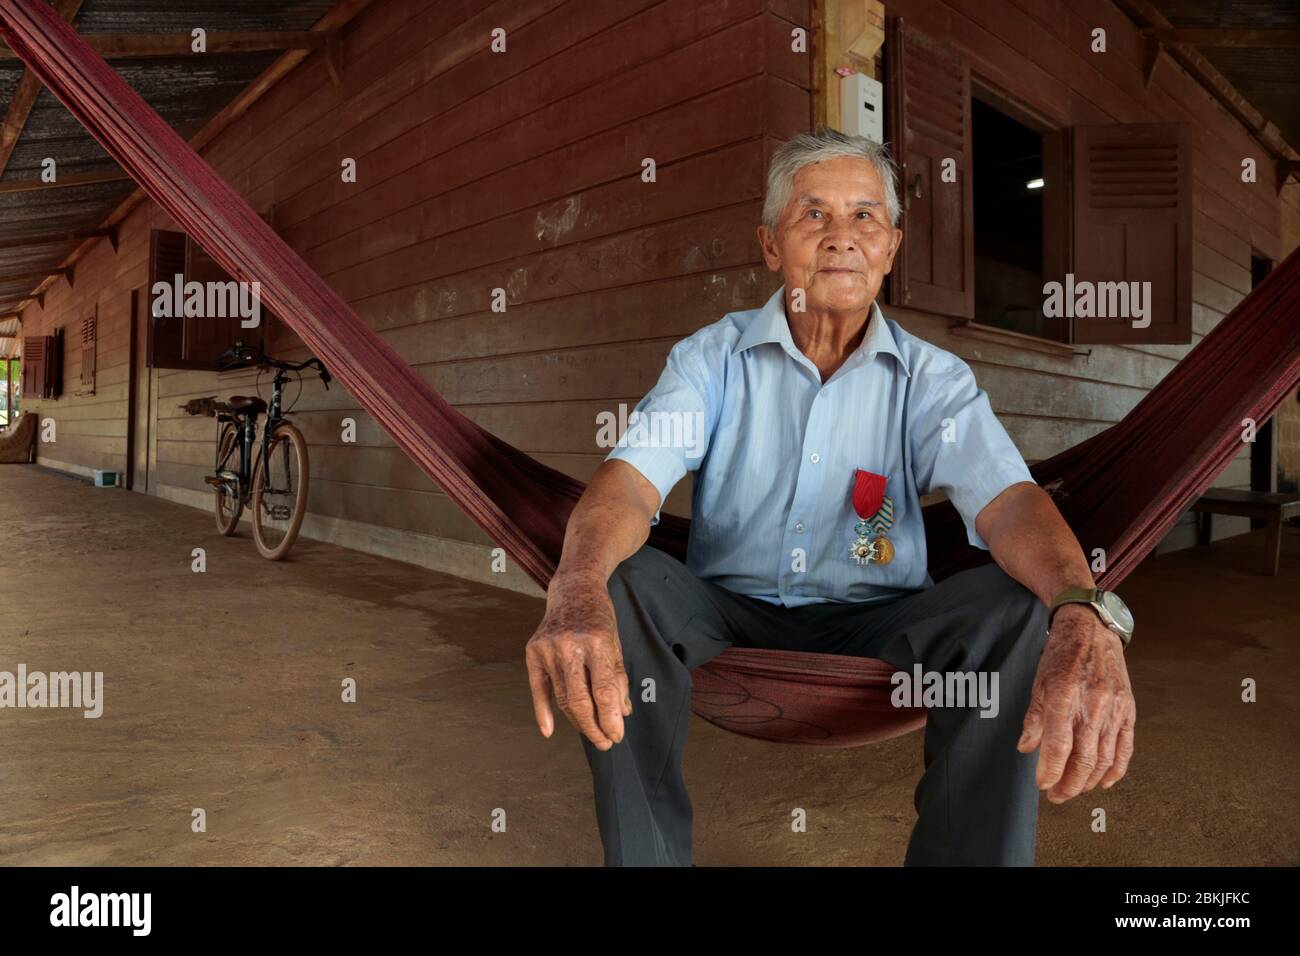 Francia, Guyana, Cacao, retrato de uno de los últimos veteranos de Hmong, Moise Mousa Txong Fong, de 97 años de edad en su casa, y con orgullo llevar la Legión de honor Foto de stock